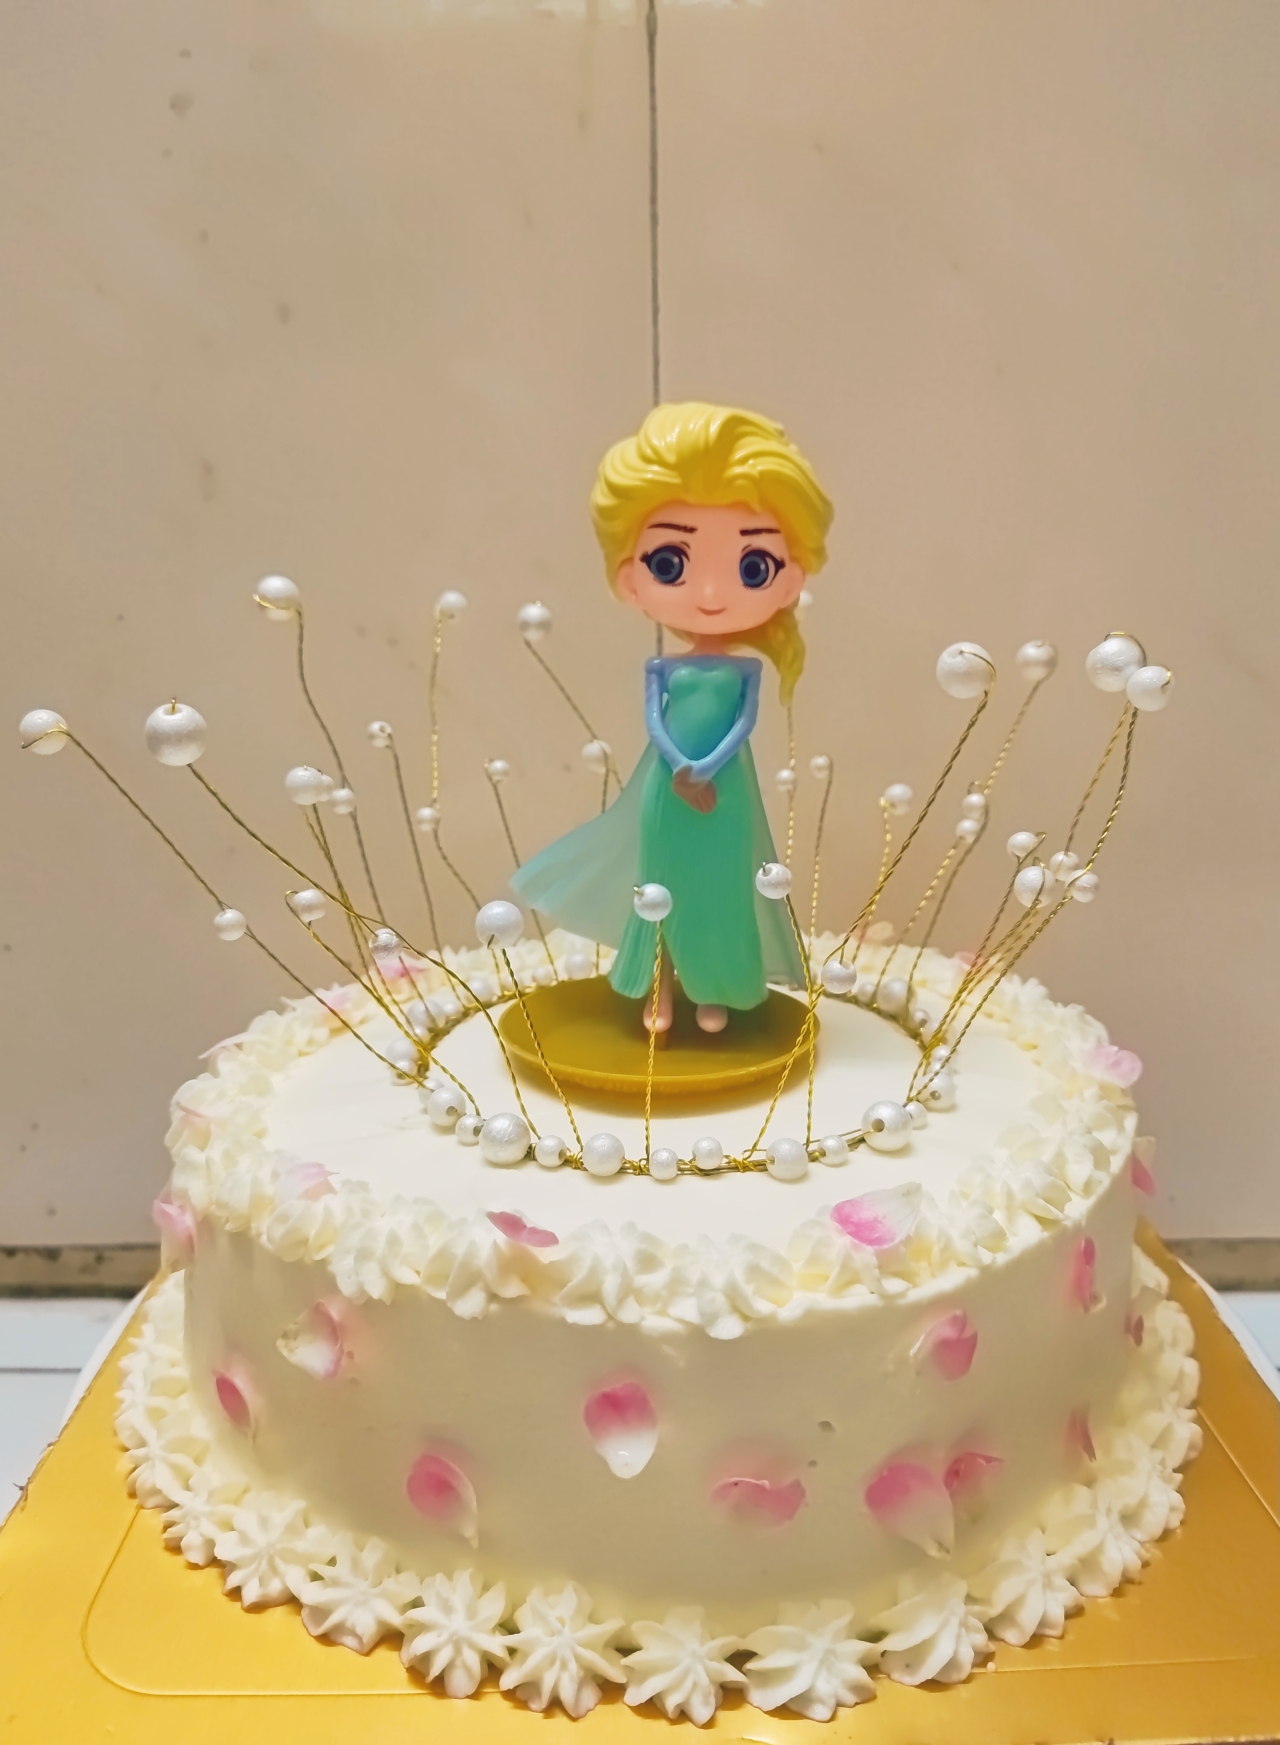 冰雪奇缘爱莎公主生日蛋糕